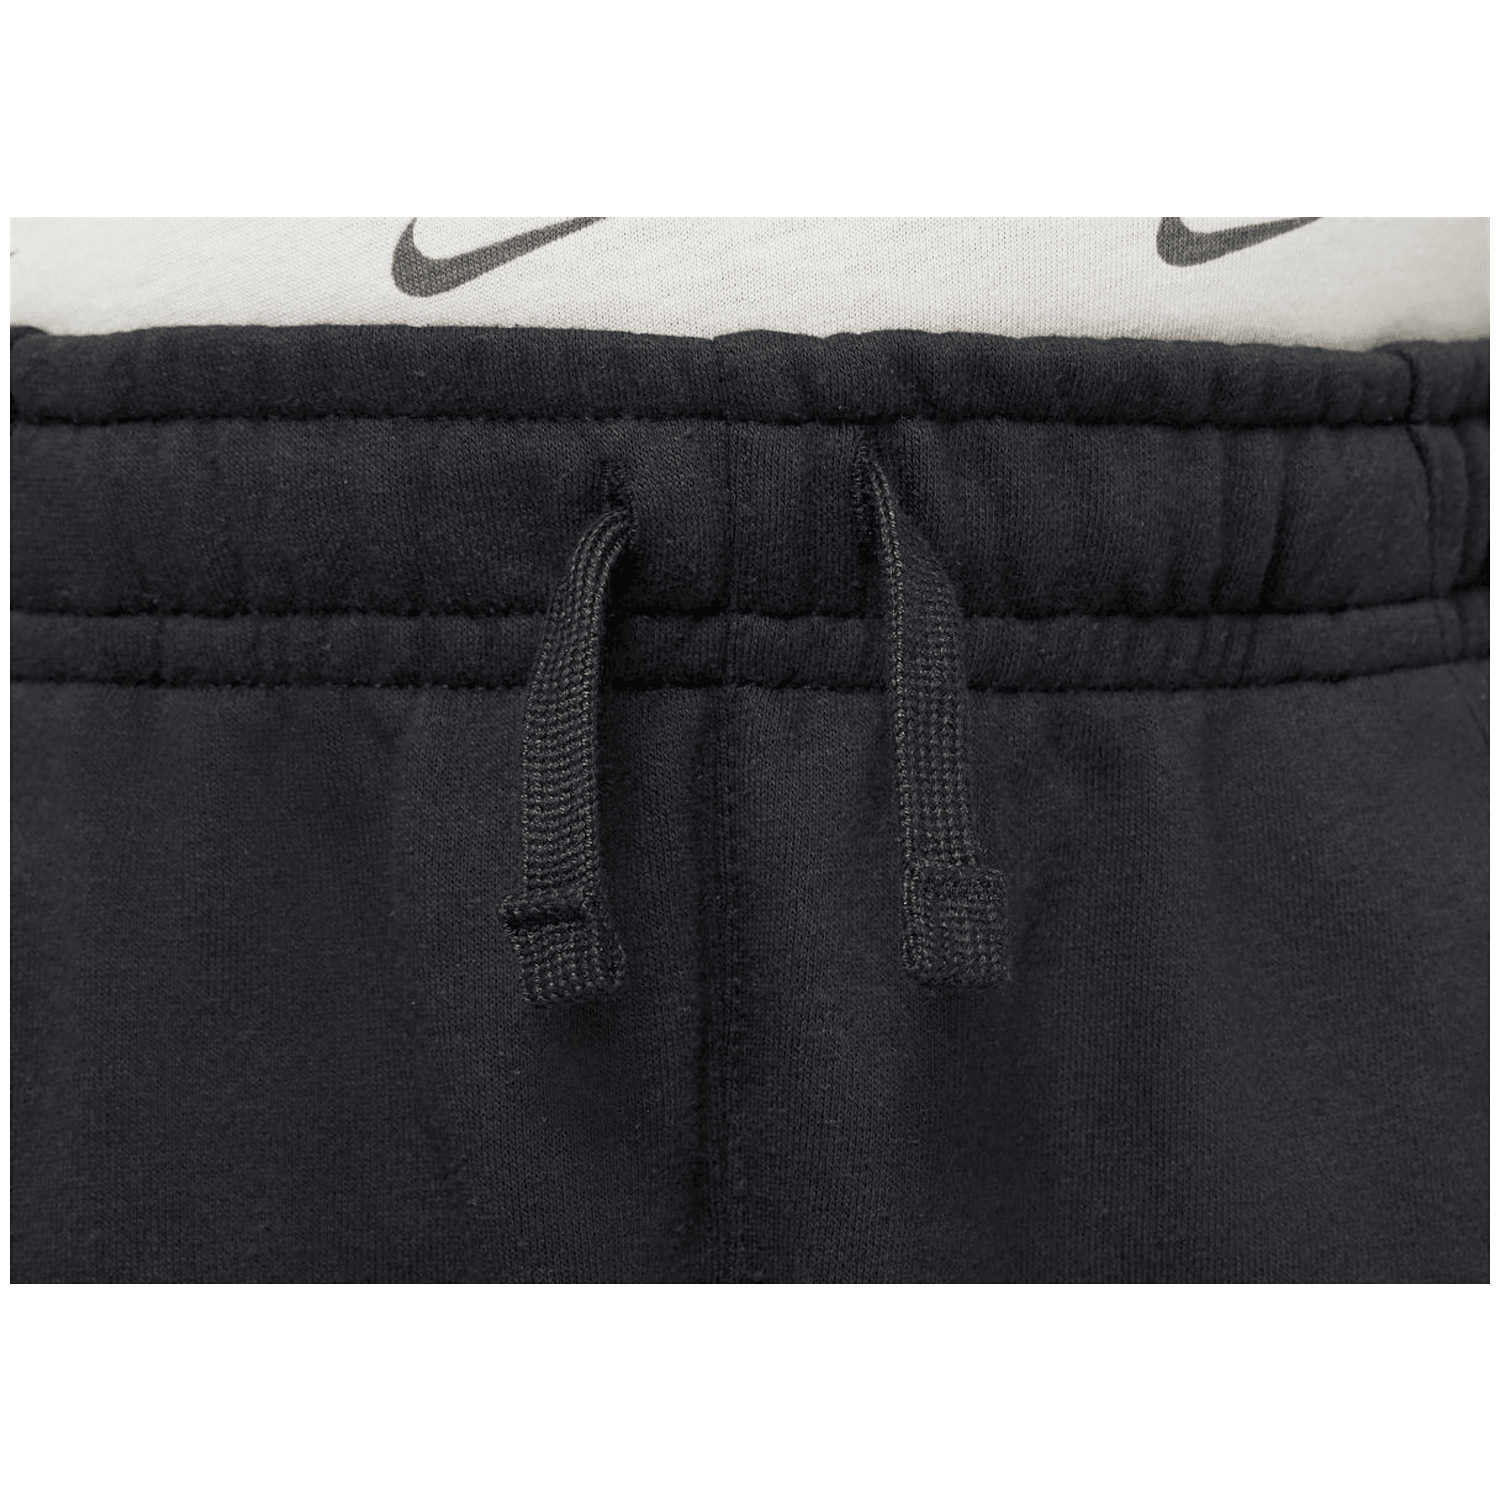 Nike Sportswear Club Jungen Shorts